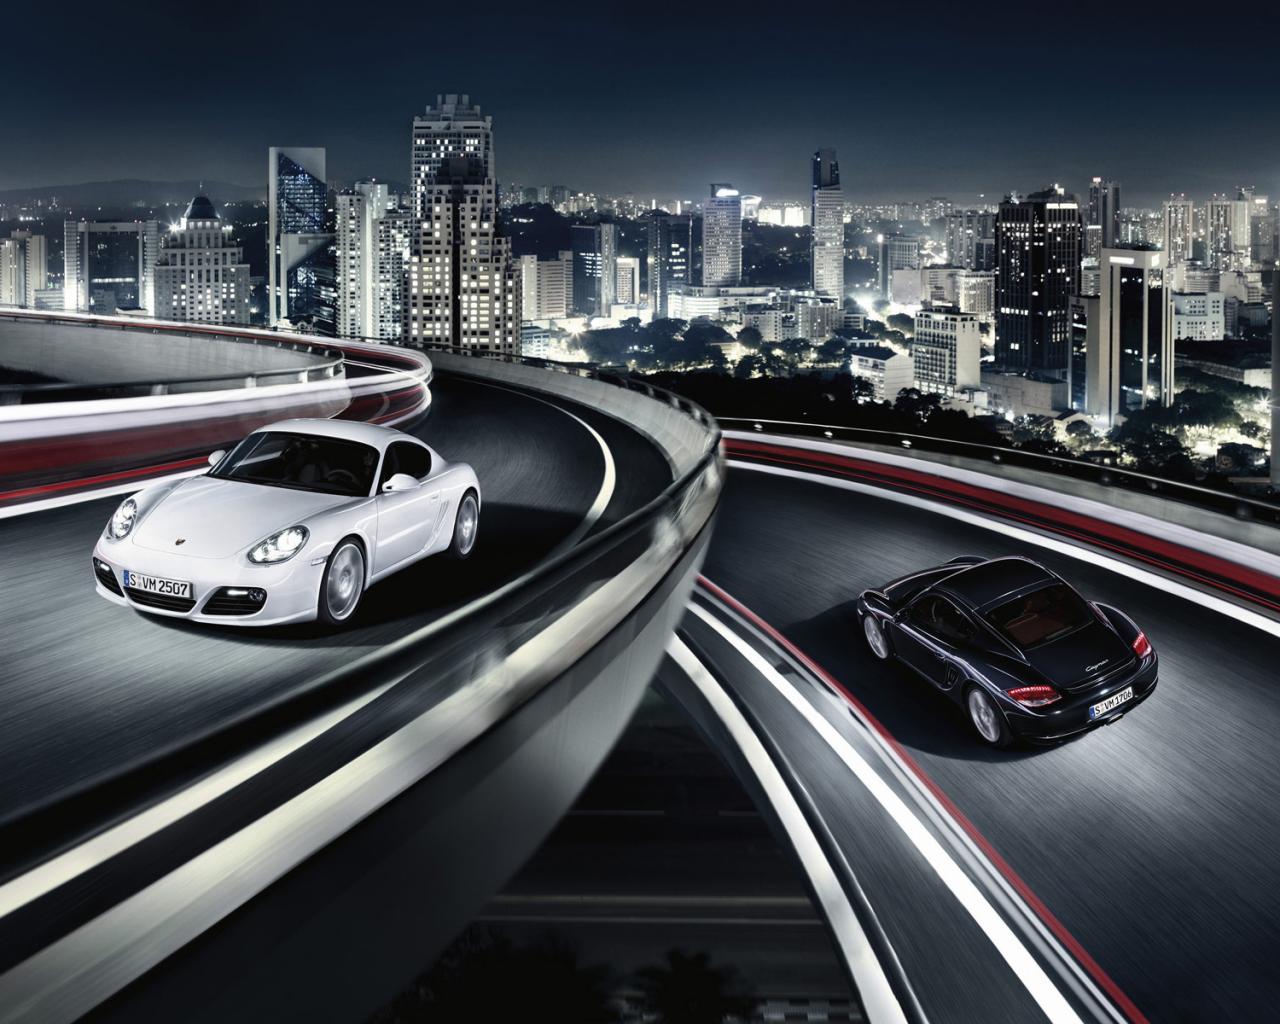 Порше, Porsche Cayman S, авто, автомобили Автомобили картинки, обои рабочий стол